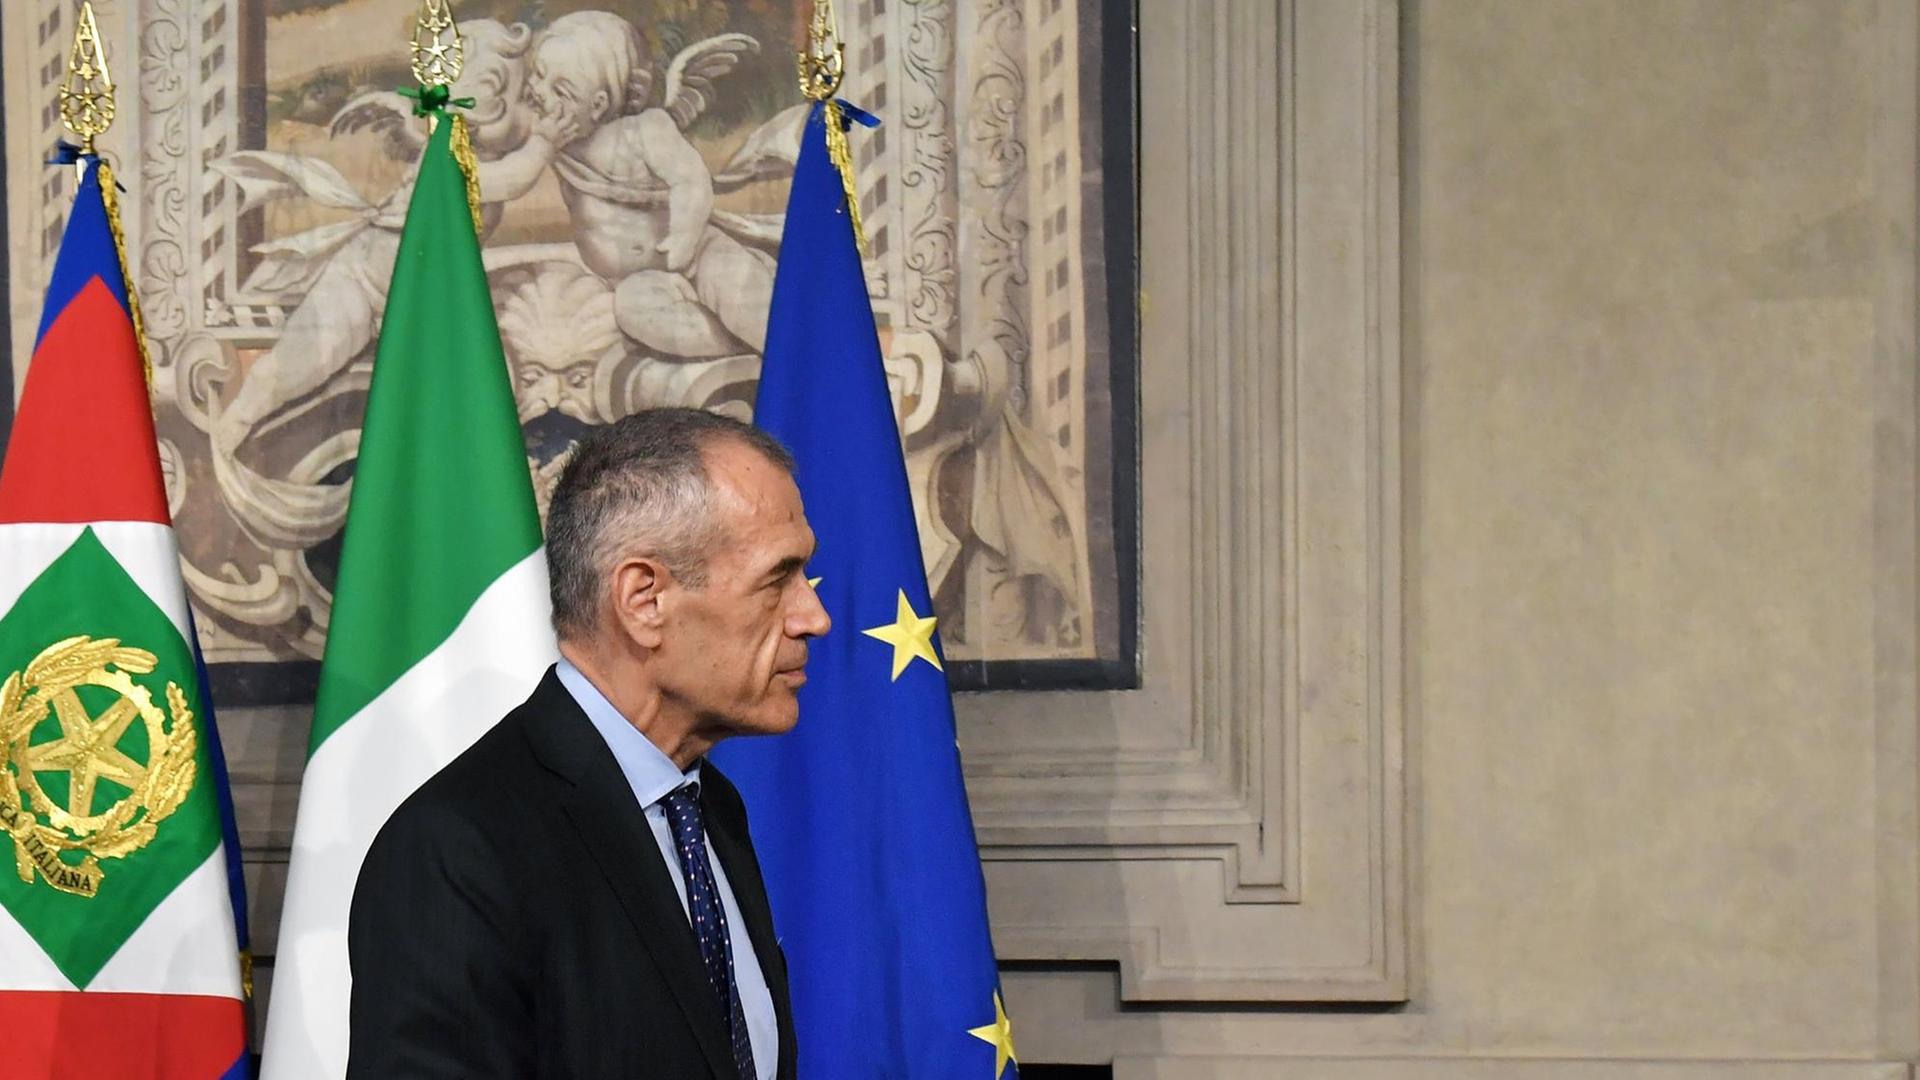 Carlo Cottarelli vor einer italienischen und einer europäischen Flagge